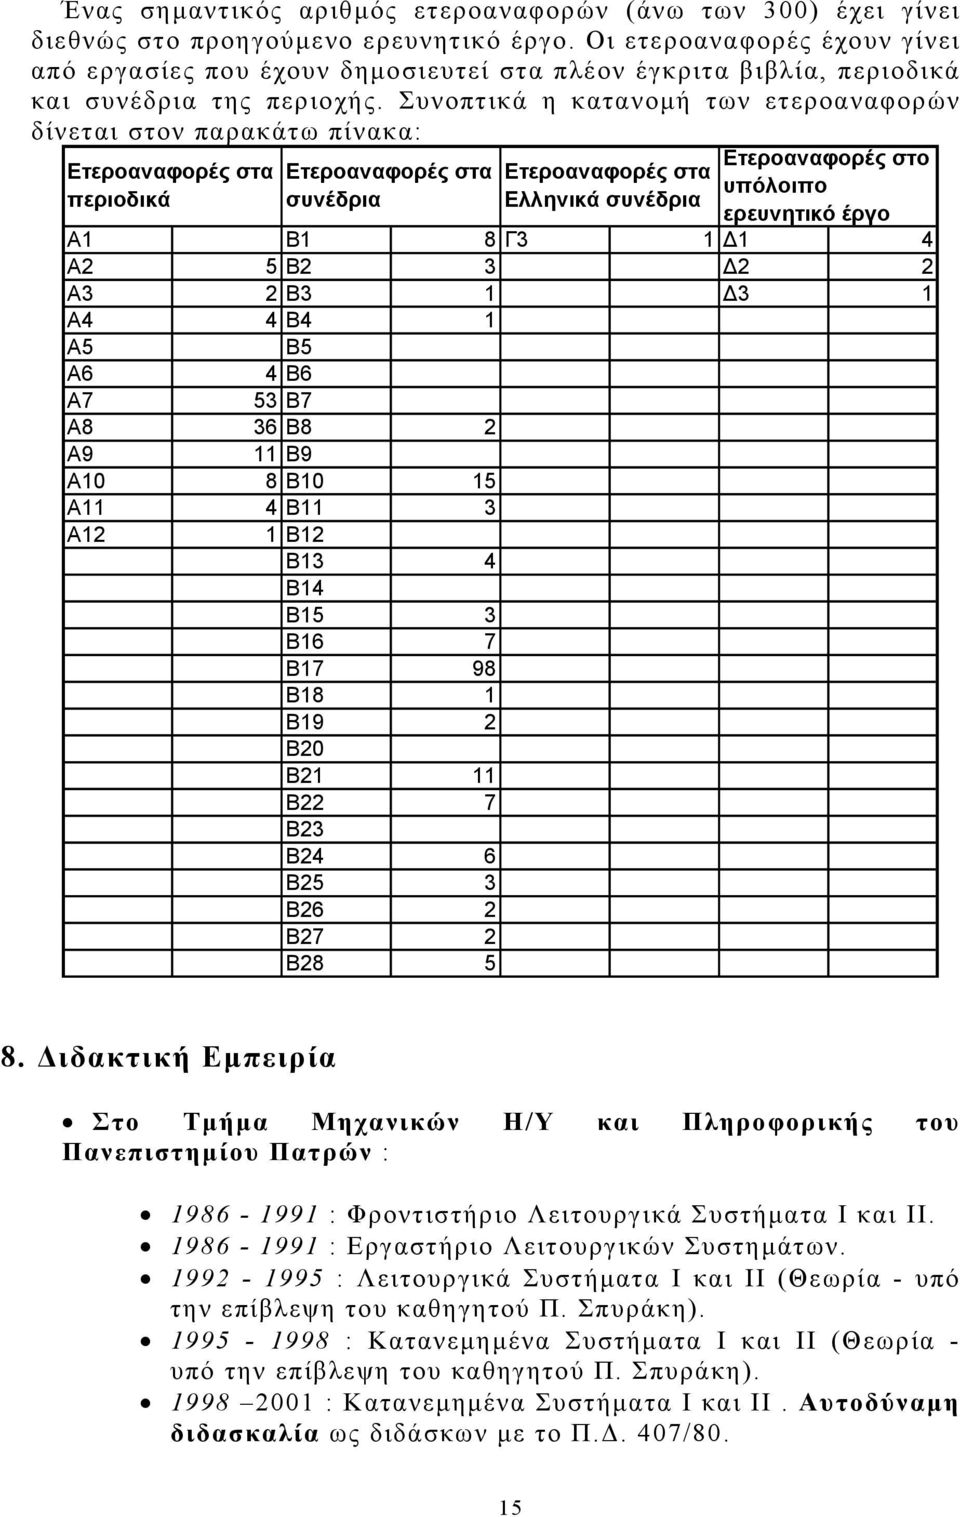 Συνοπτικά η κατανομή των ετεροαναφορών δίνεται στον παρακάτω πίνακα: Ετεροαναφορές στα περιοδικά Ετεροαναφορές στα συνέδρια ερευνητικό έργο A1 B1 8 Γ3 1 1 4 A2 5 B2 3 2 2 A3 2 B3 1 3 1 A4 4 B4 1 A5